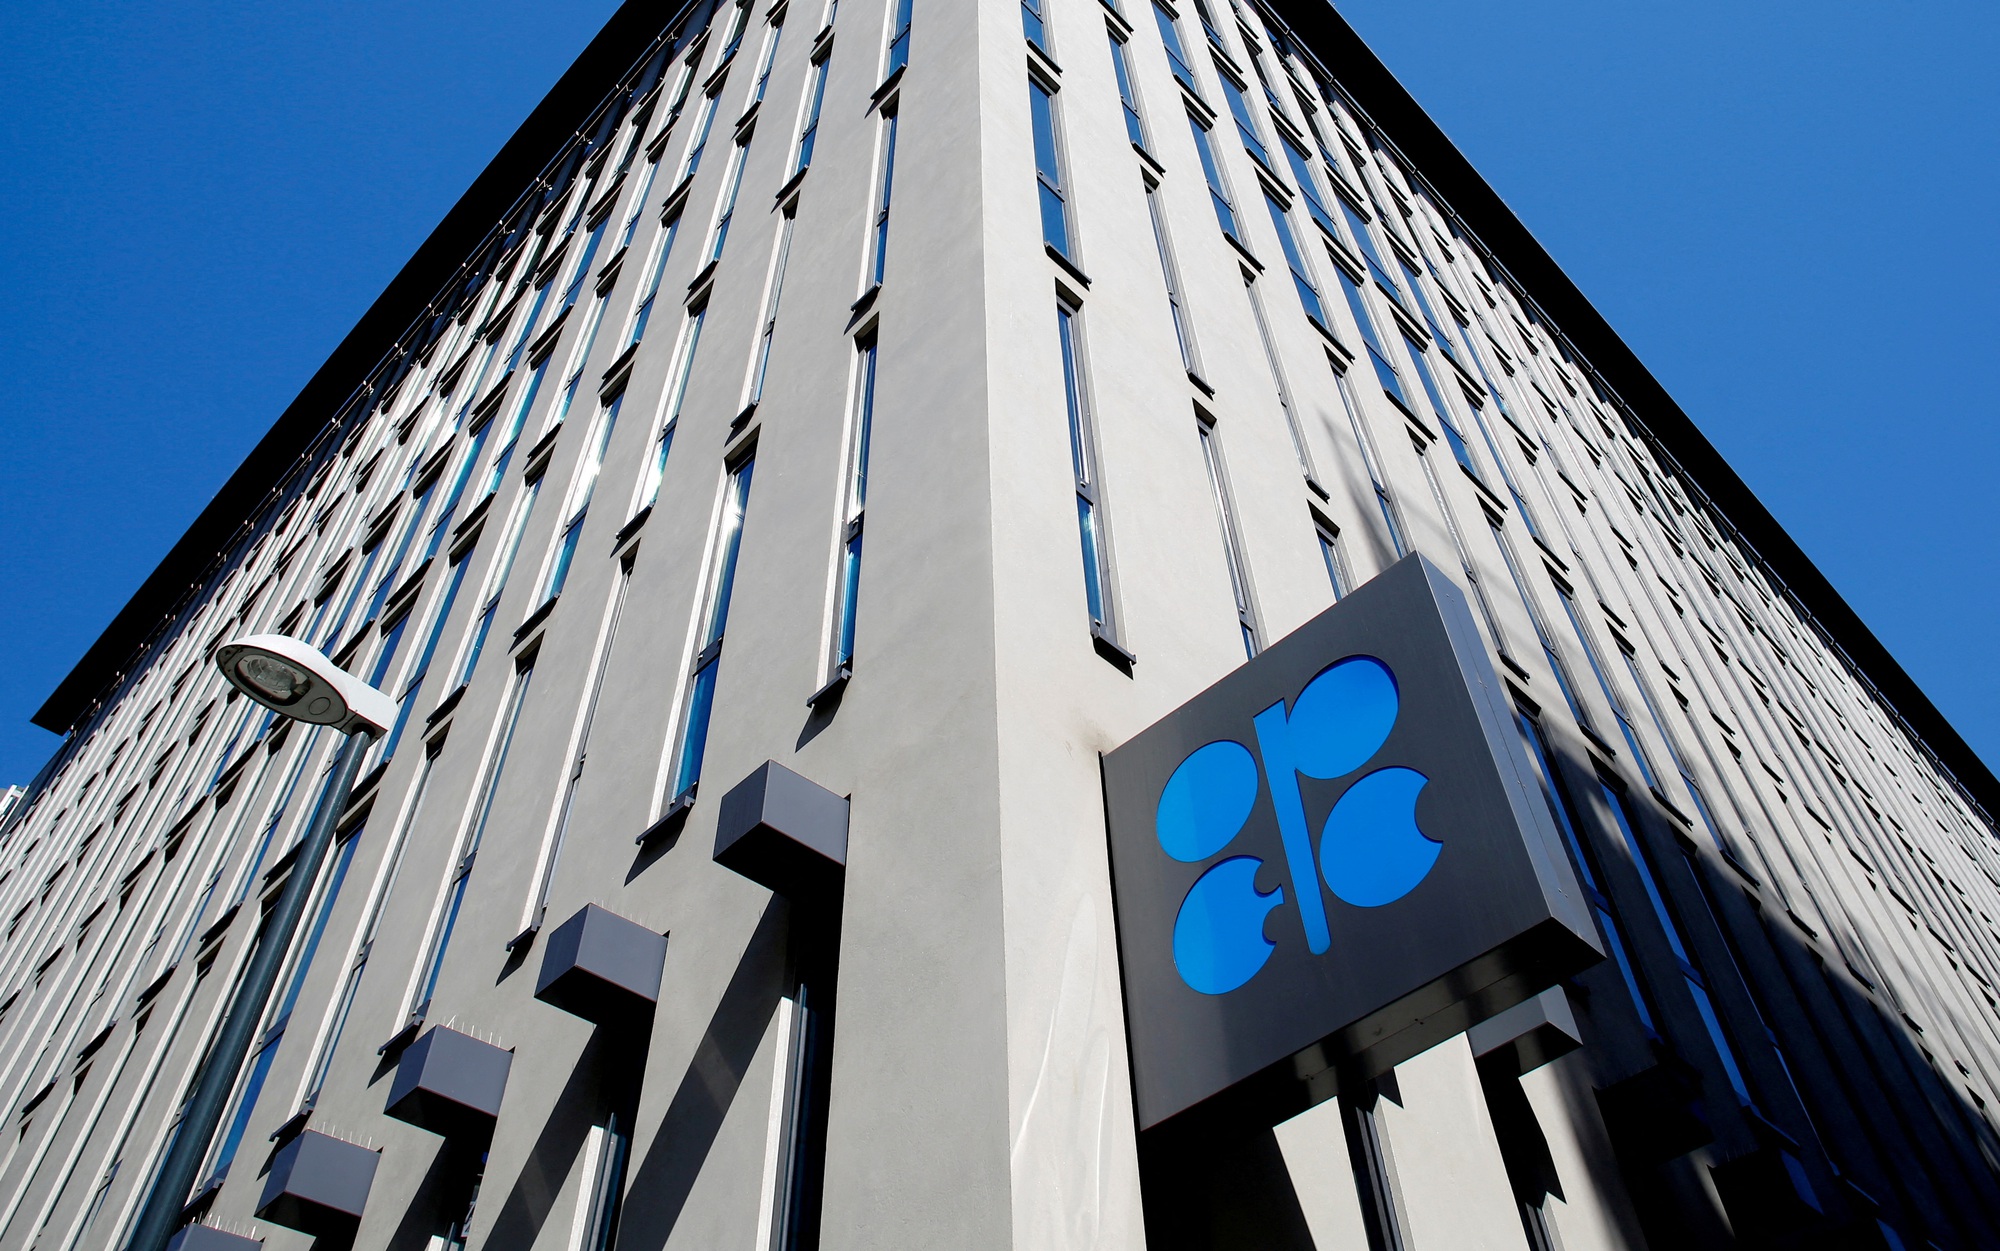 Quốc gia vừa rút khỏi OPEC bỗng hóa 